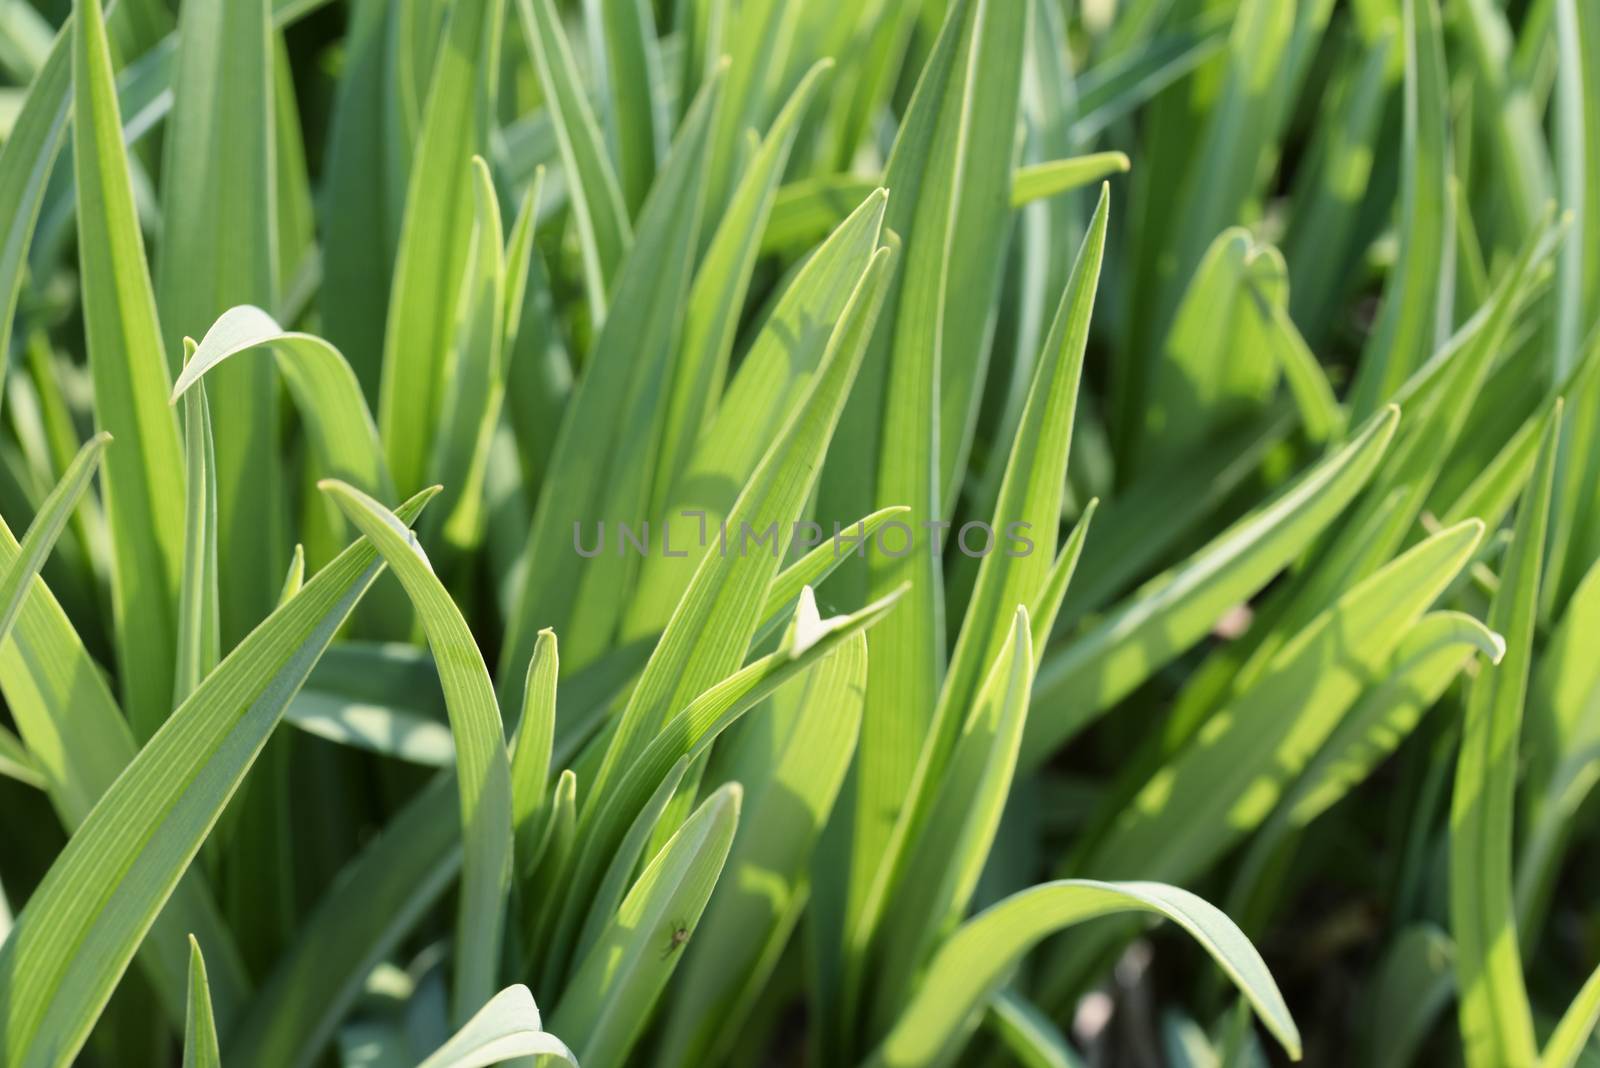 Green grass close-up. Background of green grass